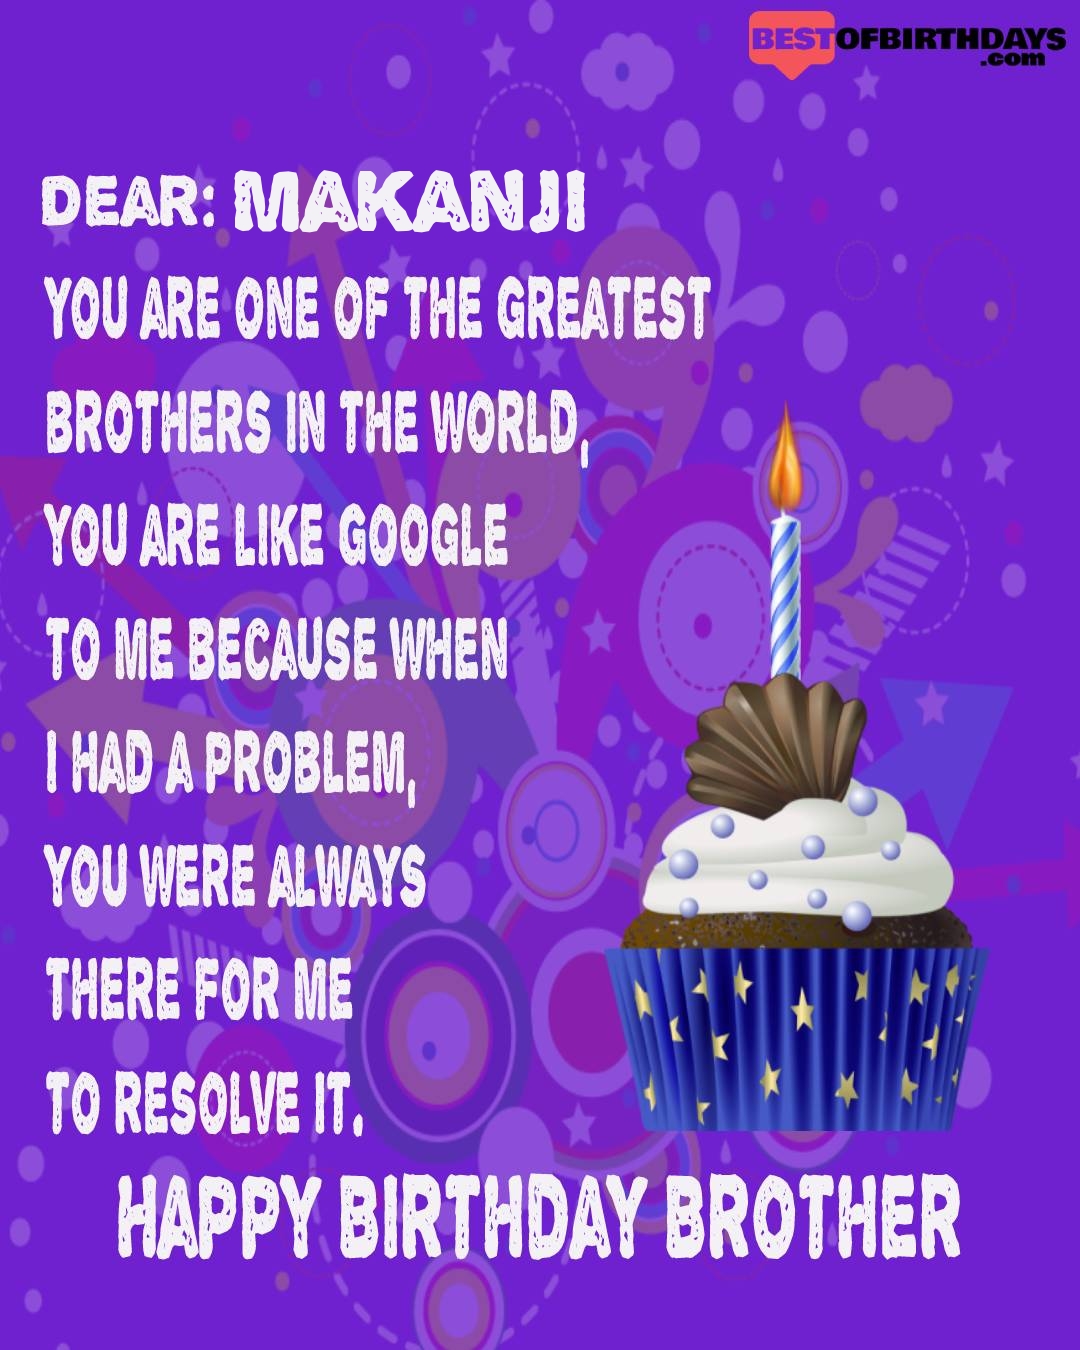 Happy birthday makanji bhai brother bro